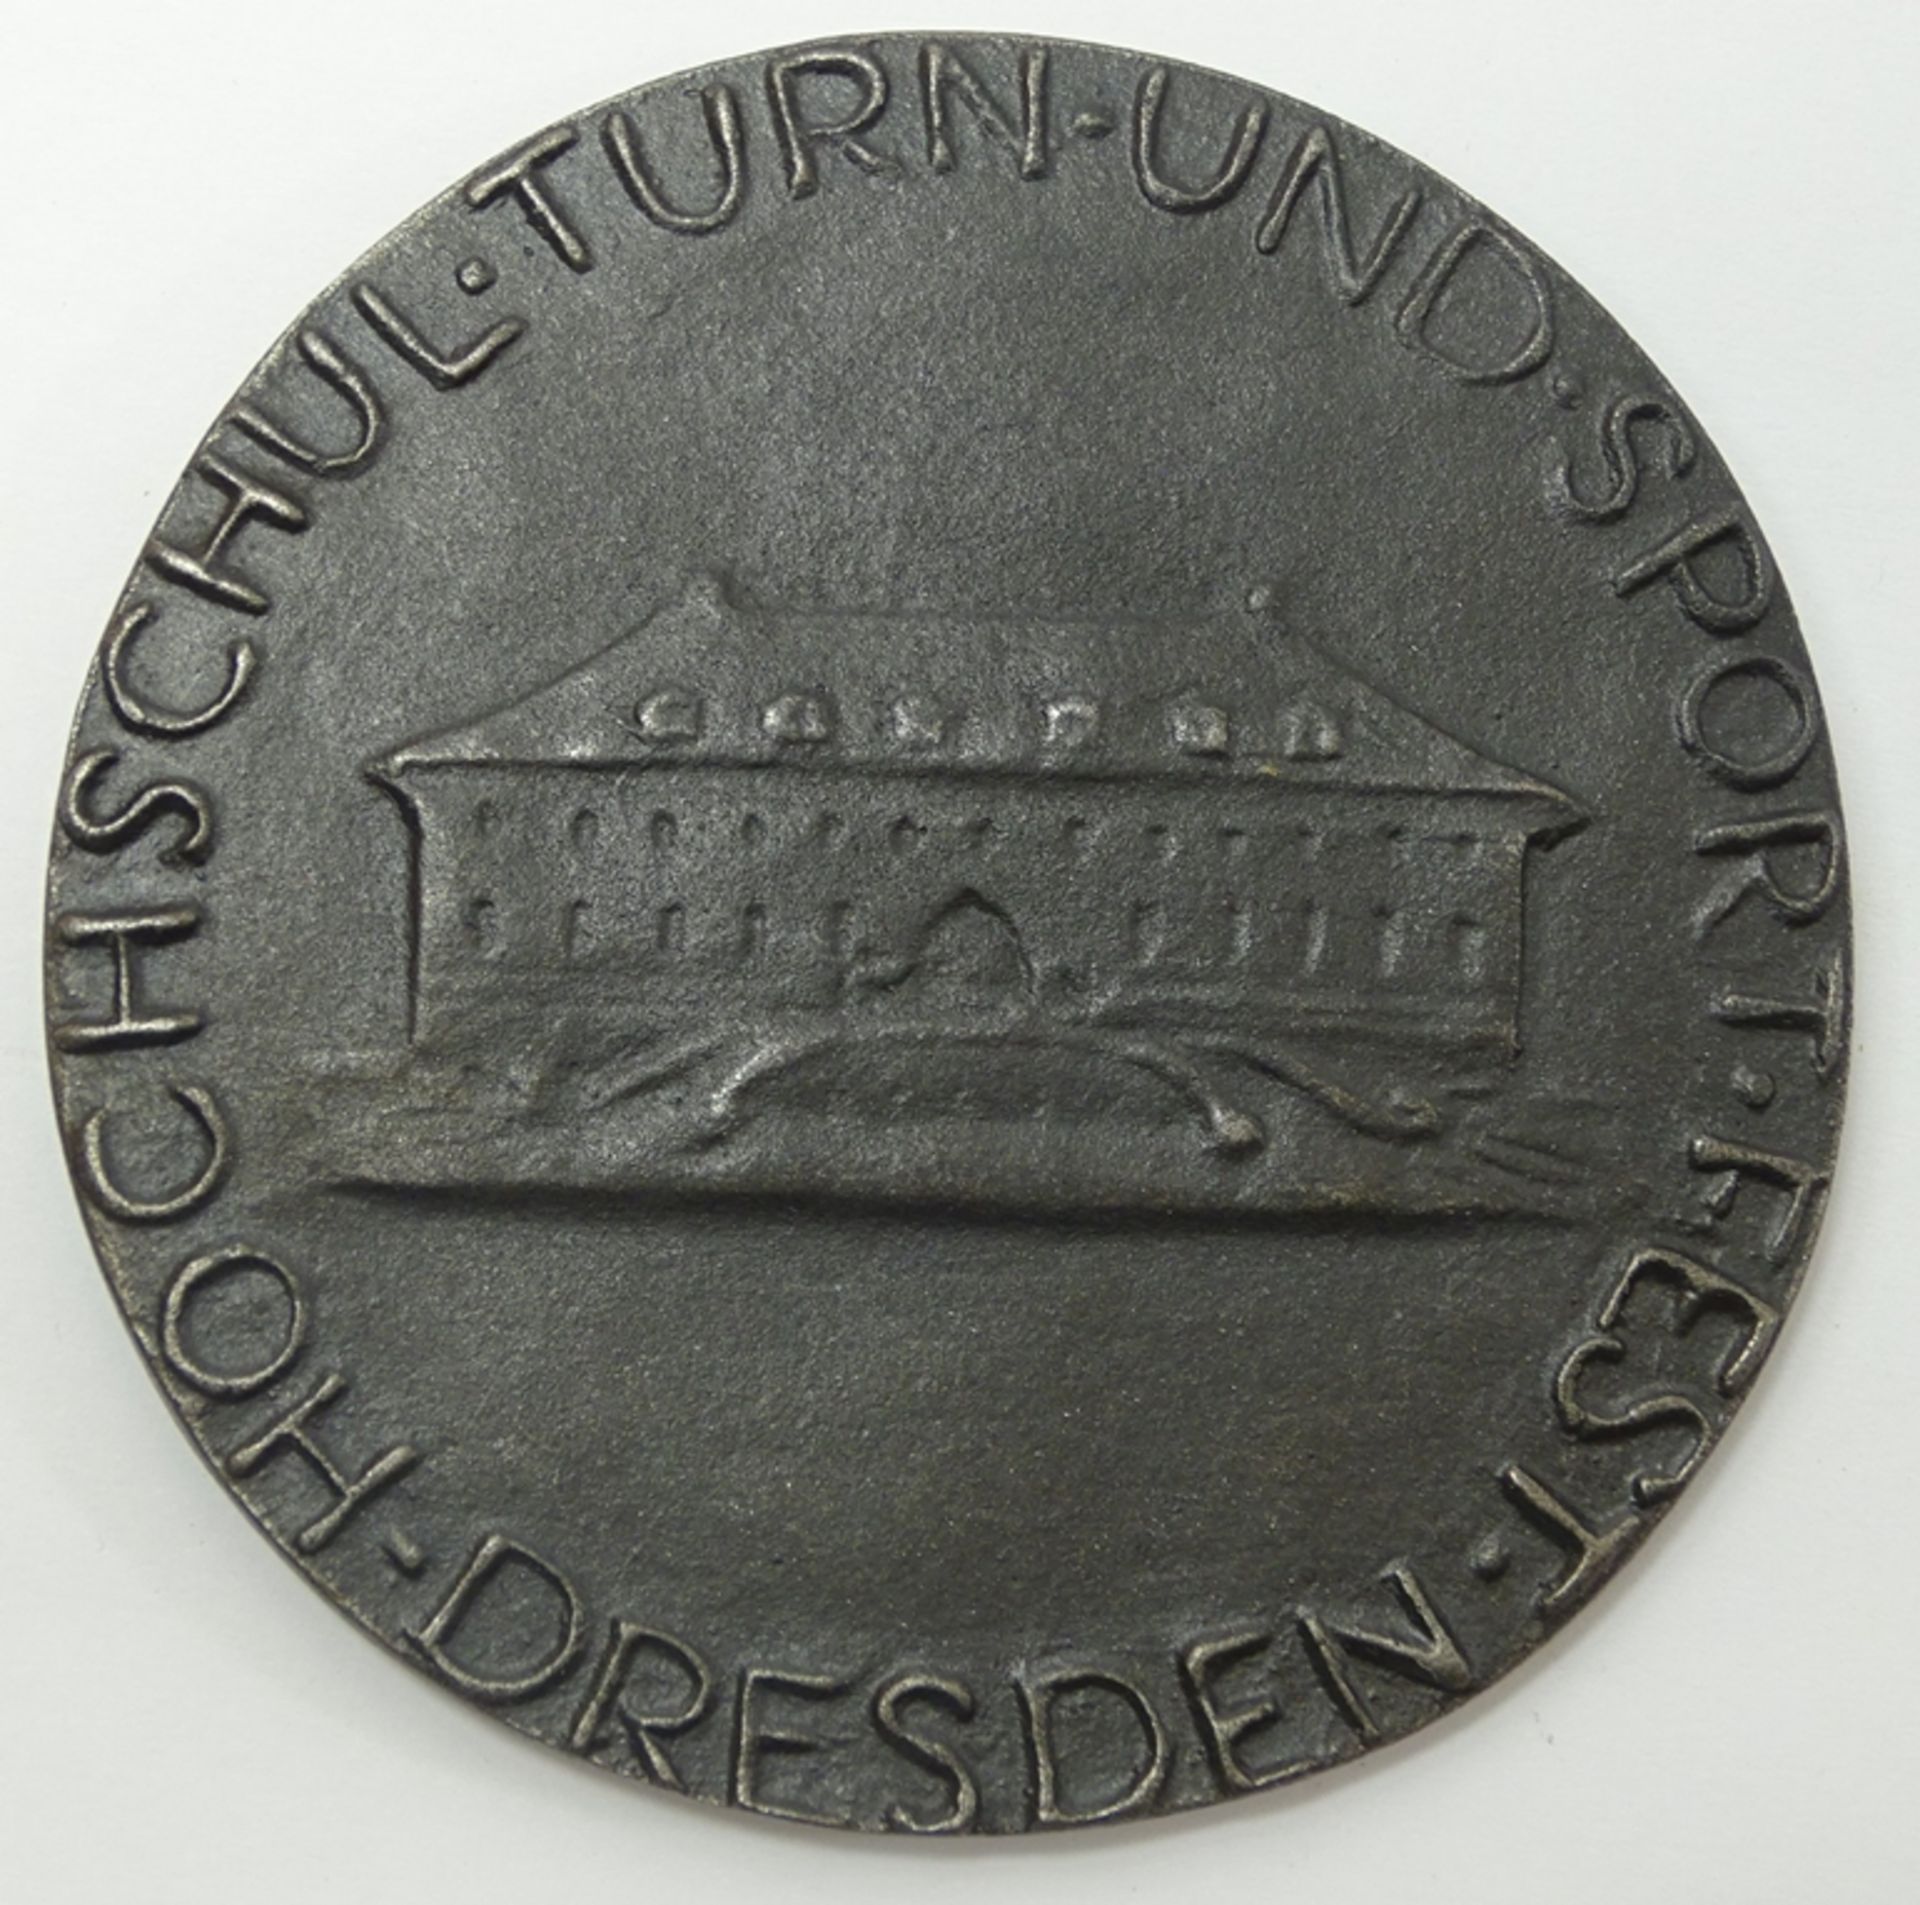 Medaille Hochschul-Turn- und Sportfest Dresden 1926, Eisen, Entwurf A. Lange, Ø 8,5 cm